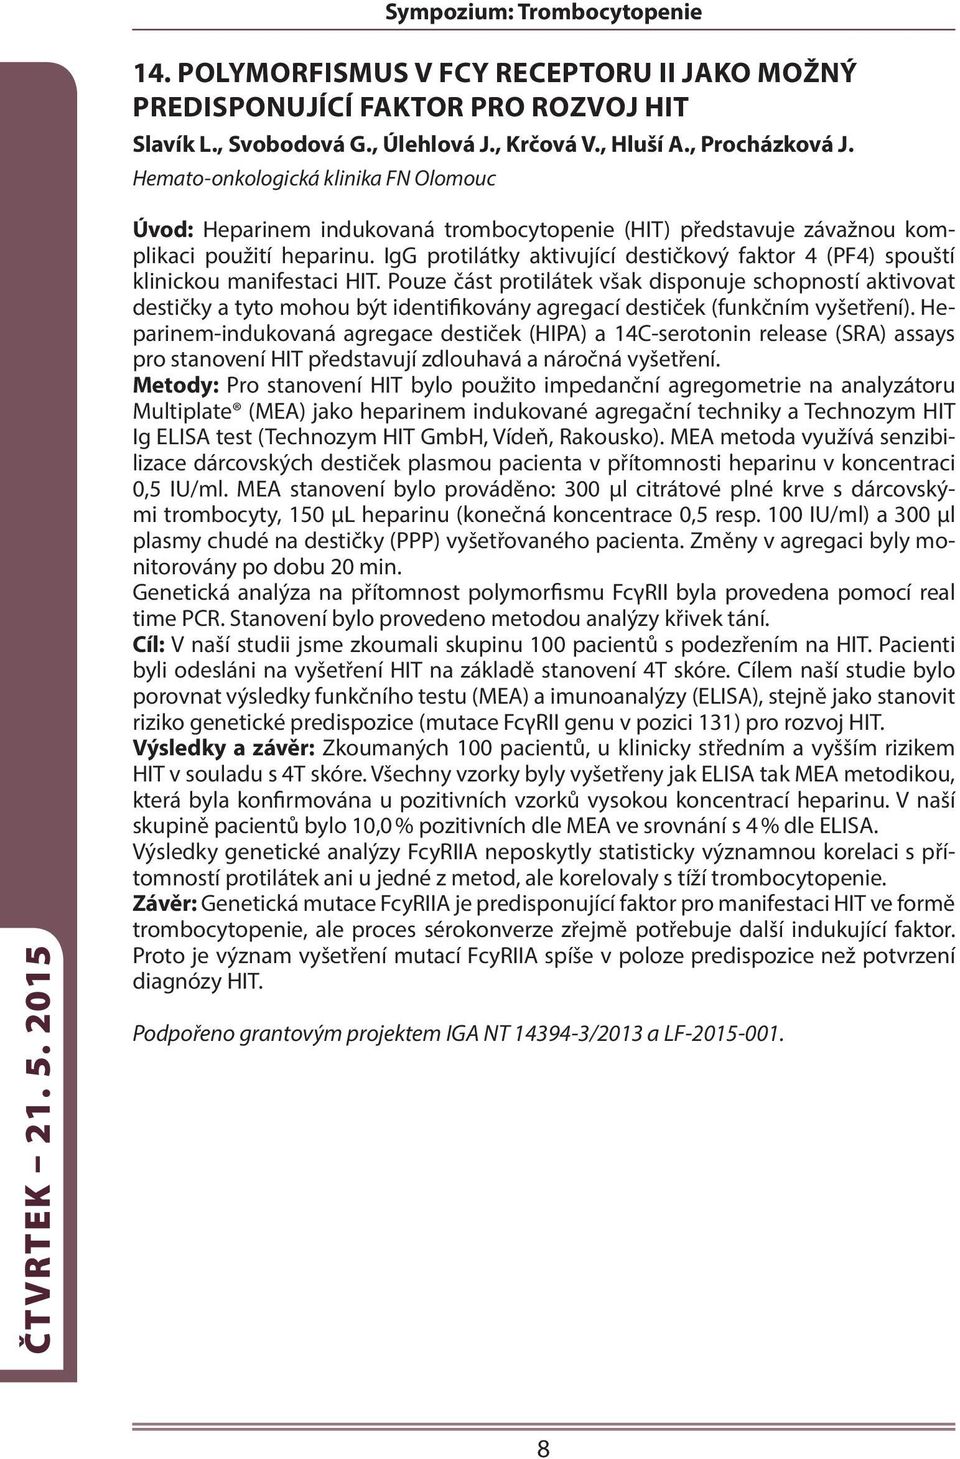 IgG protilátky aktivující destičkový faktor 4 (PF4) spouští klinickou manifestaci HIT.